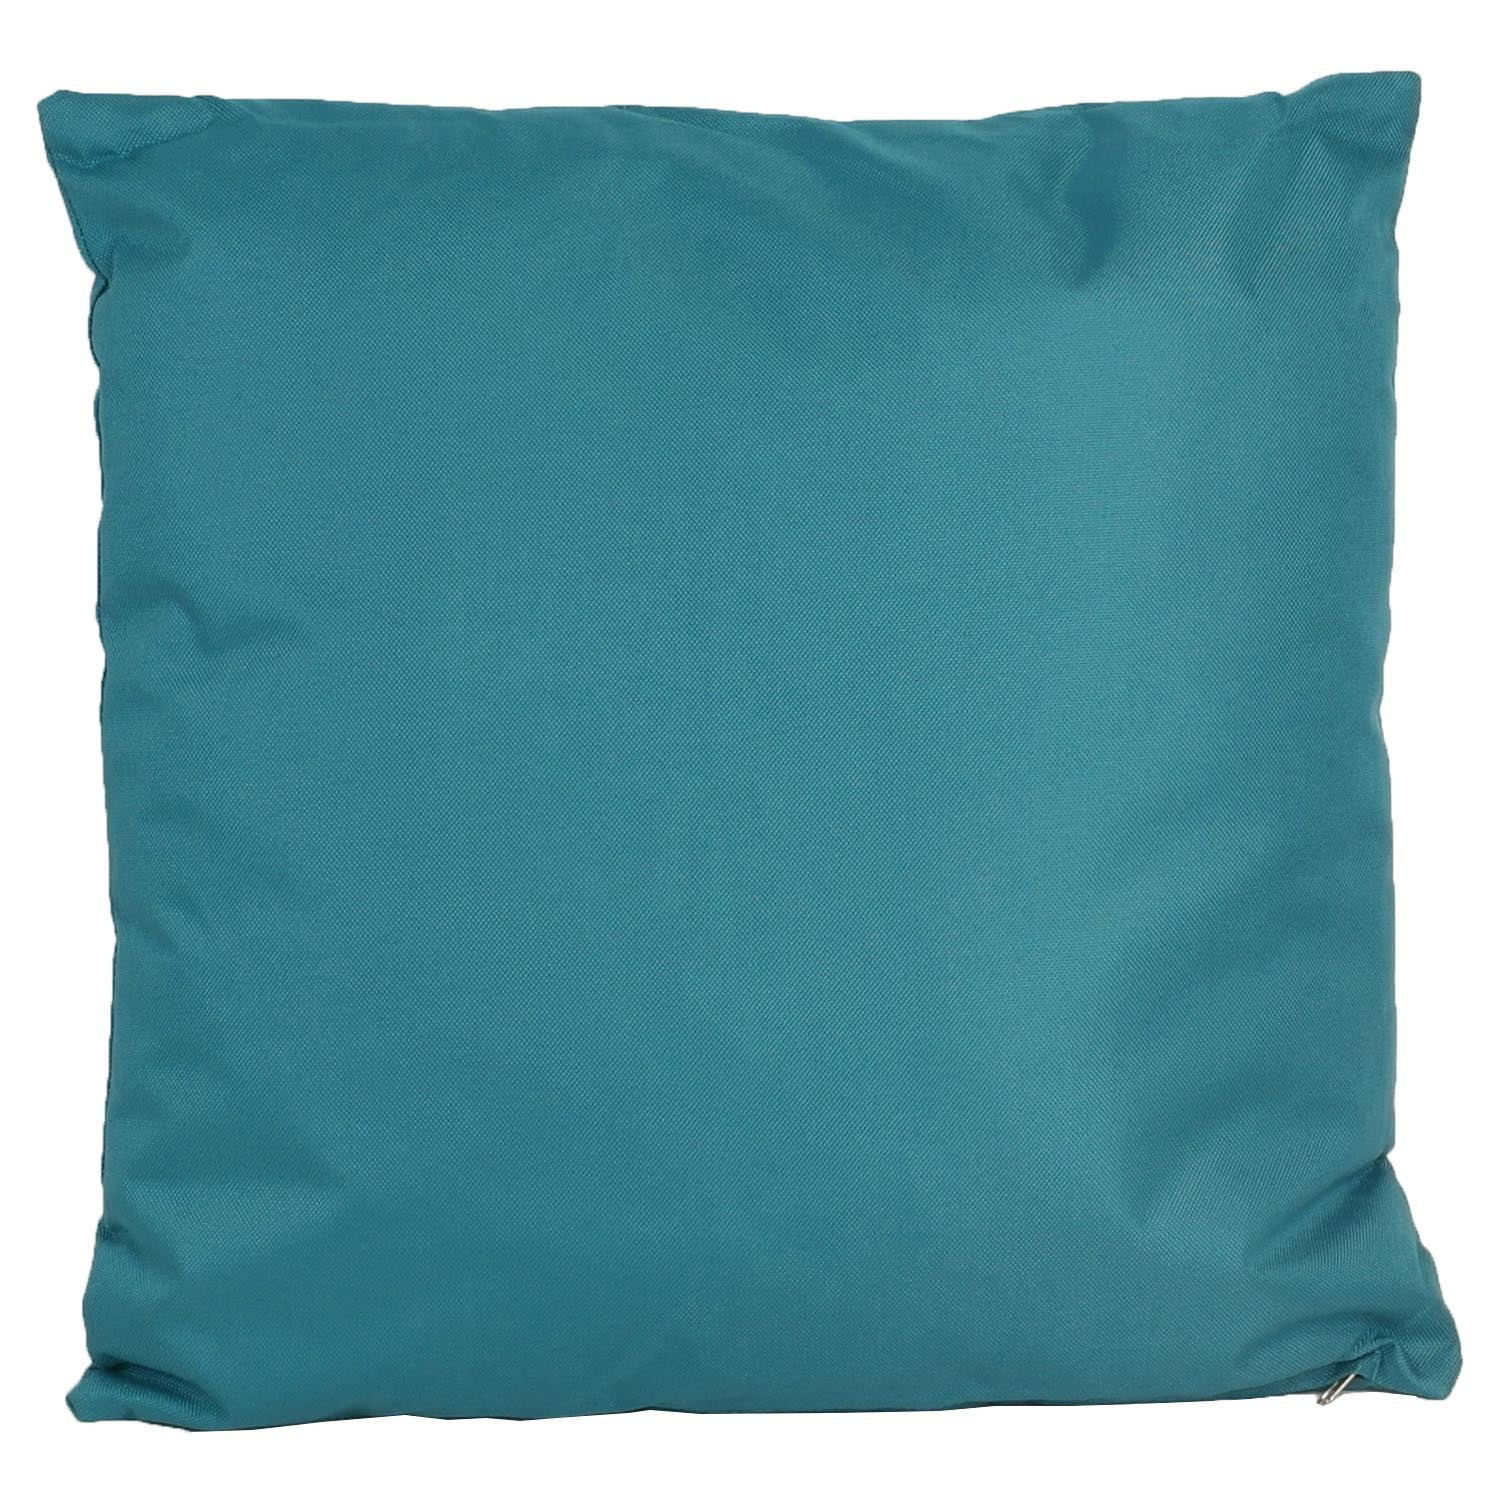 1x Bank-sier kussens voor binnen en buiten in de kleur petrol blauw 45 x 45 cm